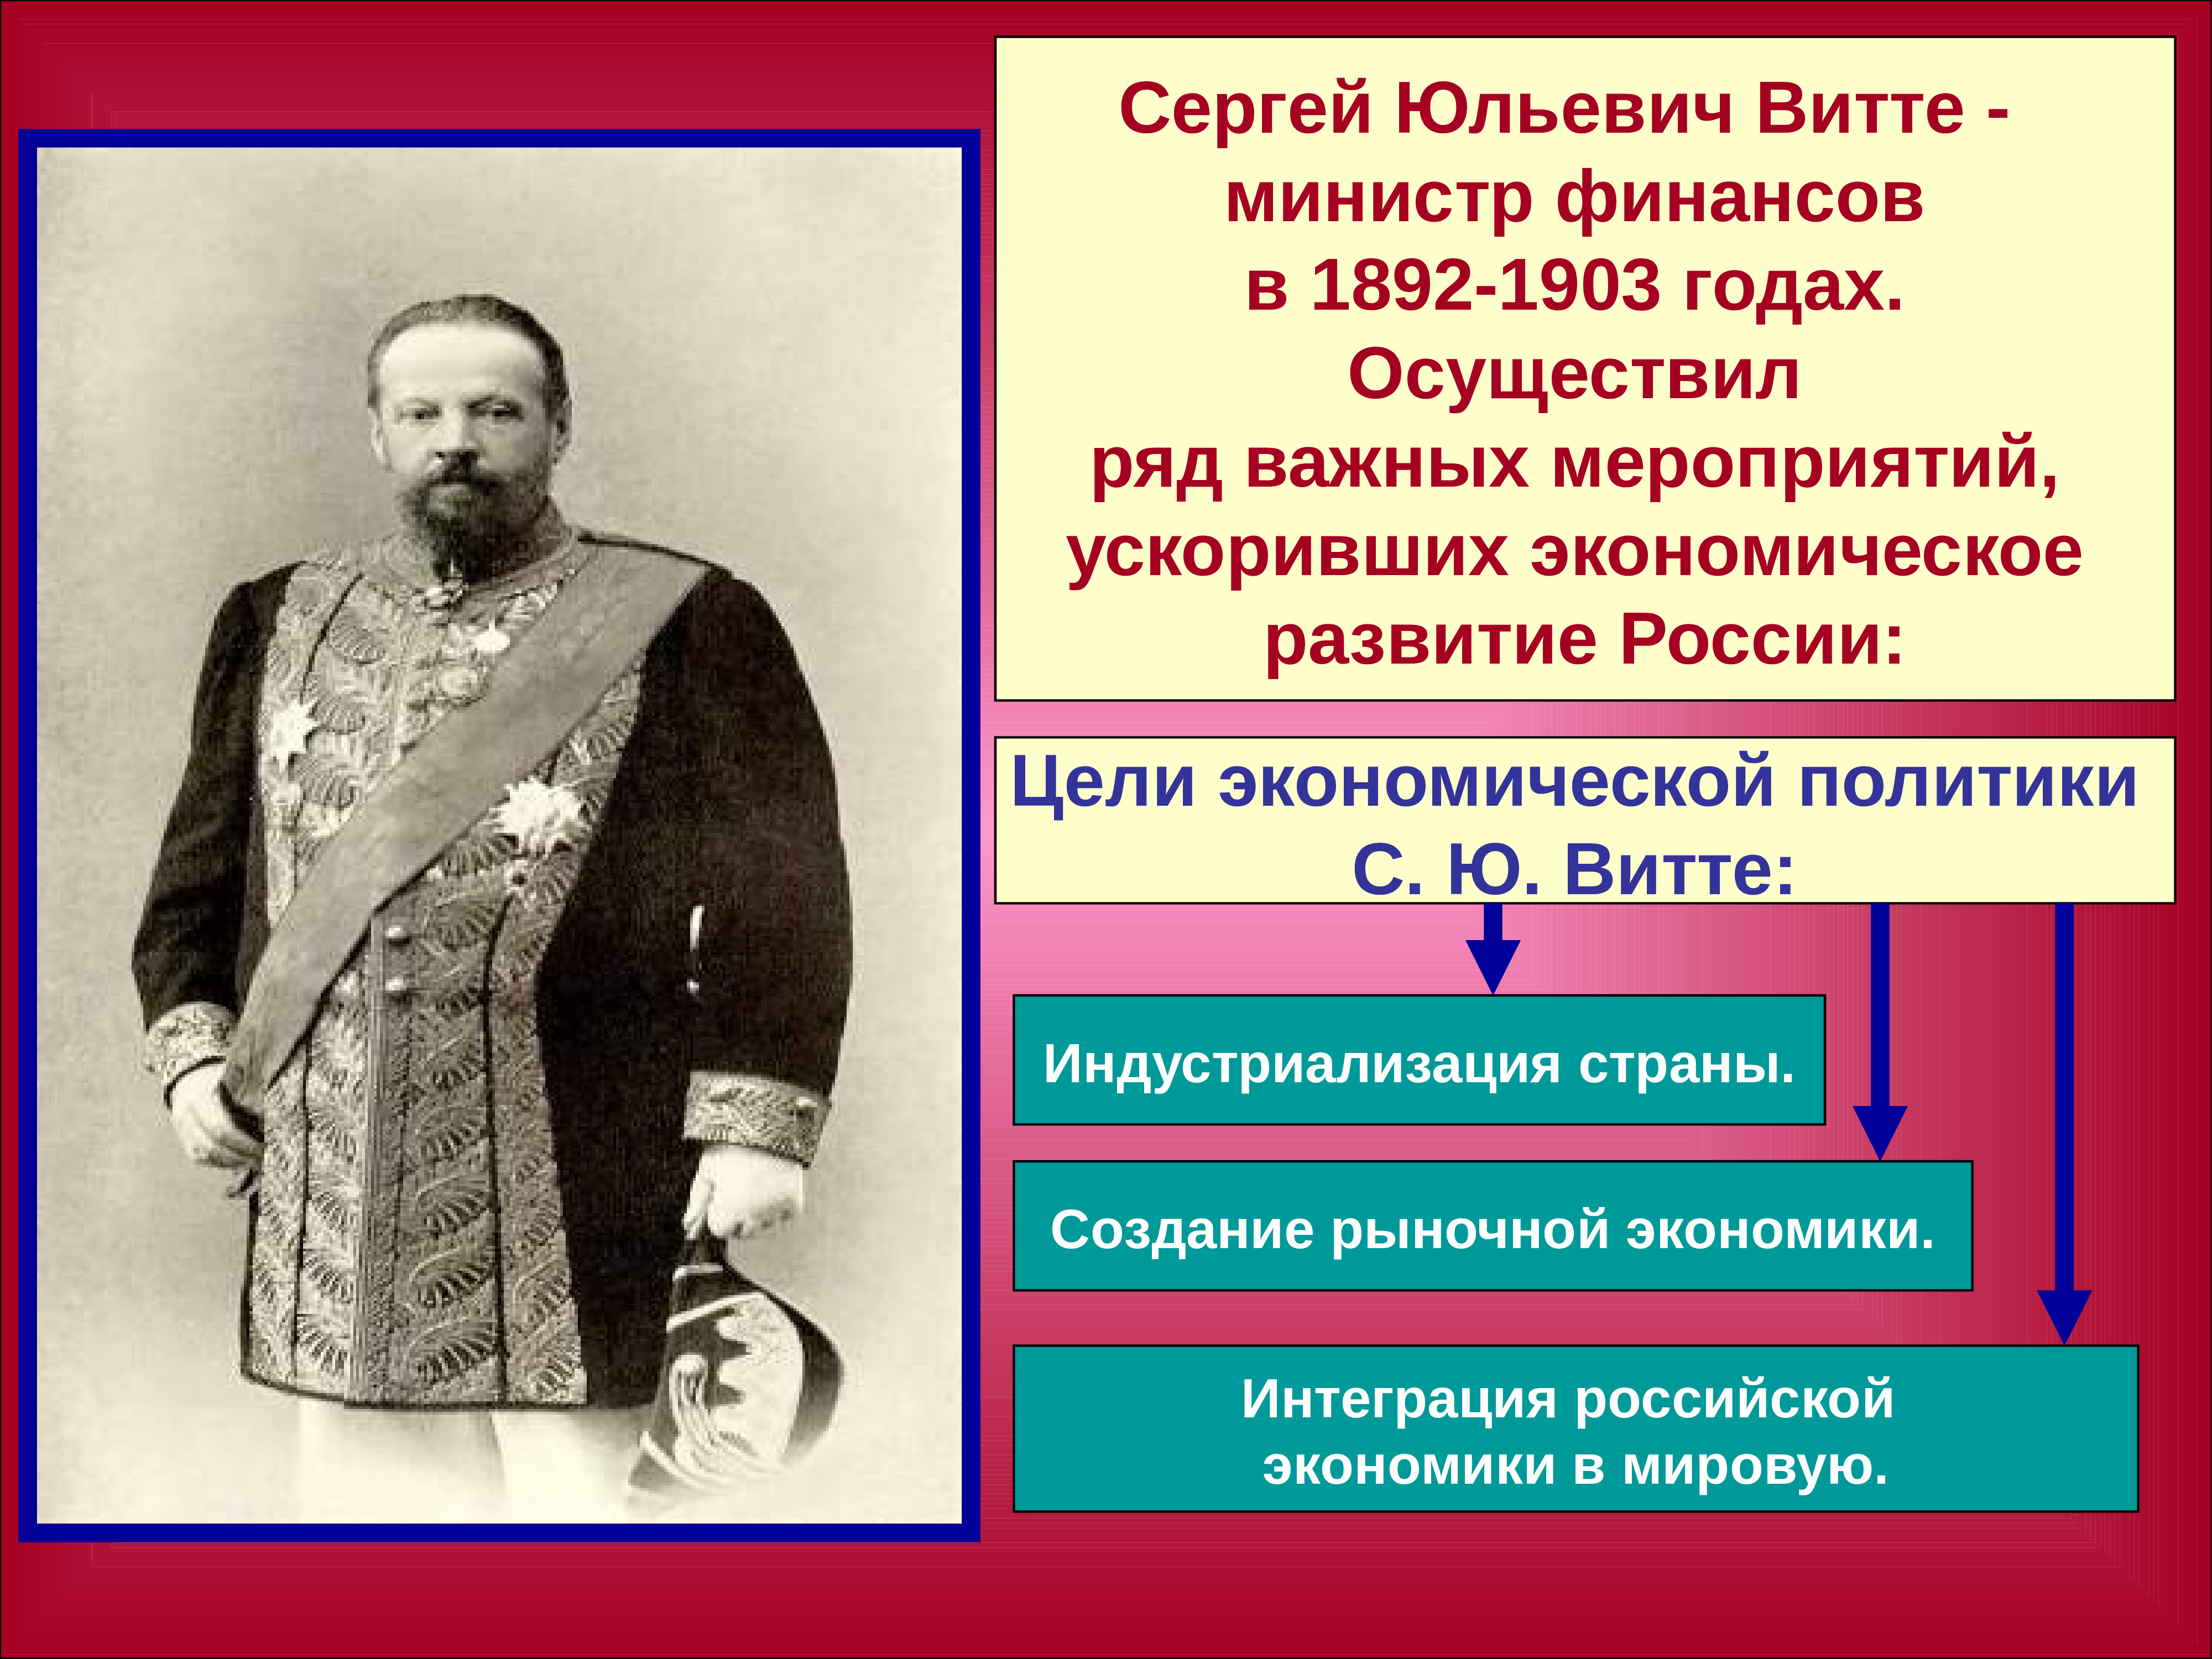 Витте Сергей Юльевич министр финансов 1892-1903